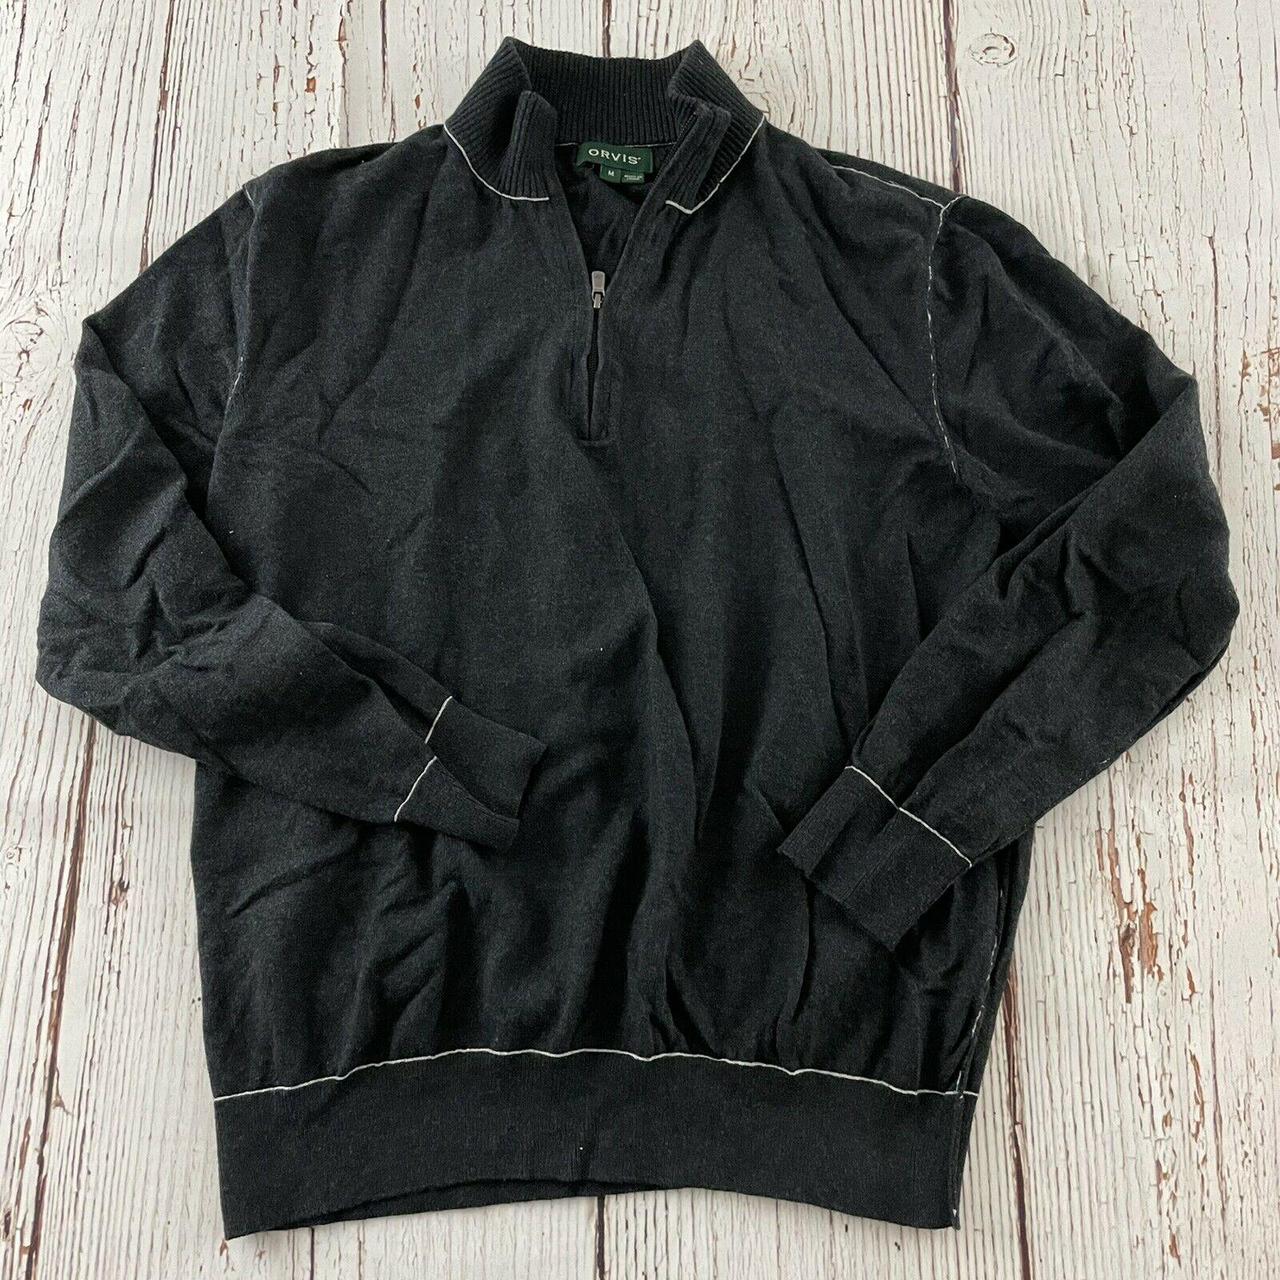 Orvis Men's 1/4 Zip Light Pullover Sweater Gray... - Depop